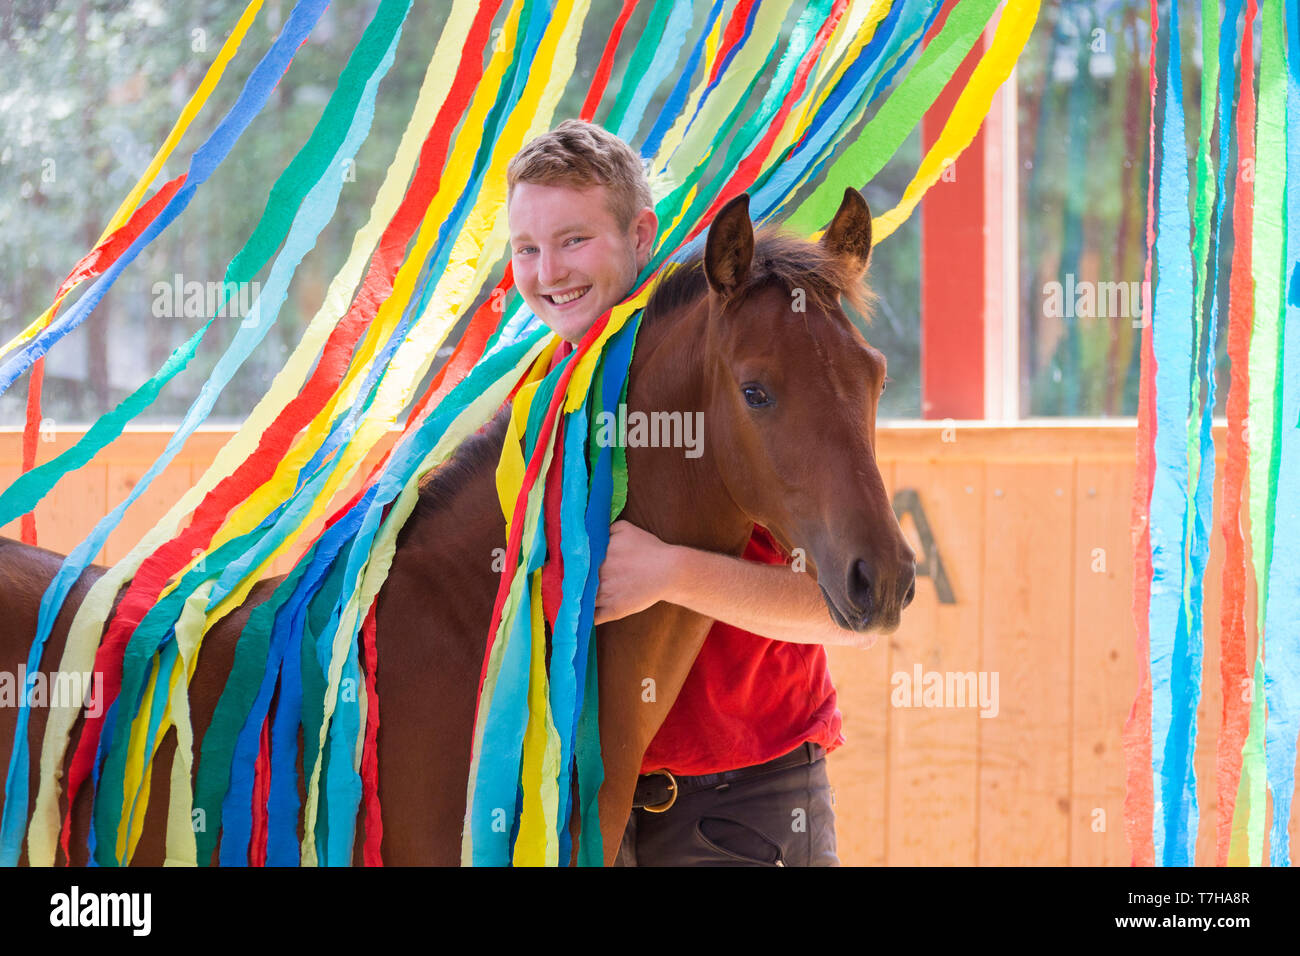 Iberischen Sport Pferd. Junger Mann mit Bay Fohlen unter bunten Bändern. Teil der Ausbildung ungewöhnliche Dinge ohne Angst zu akzeptieren. Deutschland Stockfoto